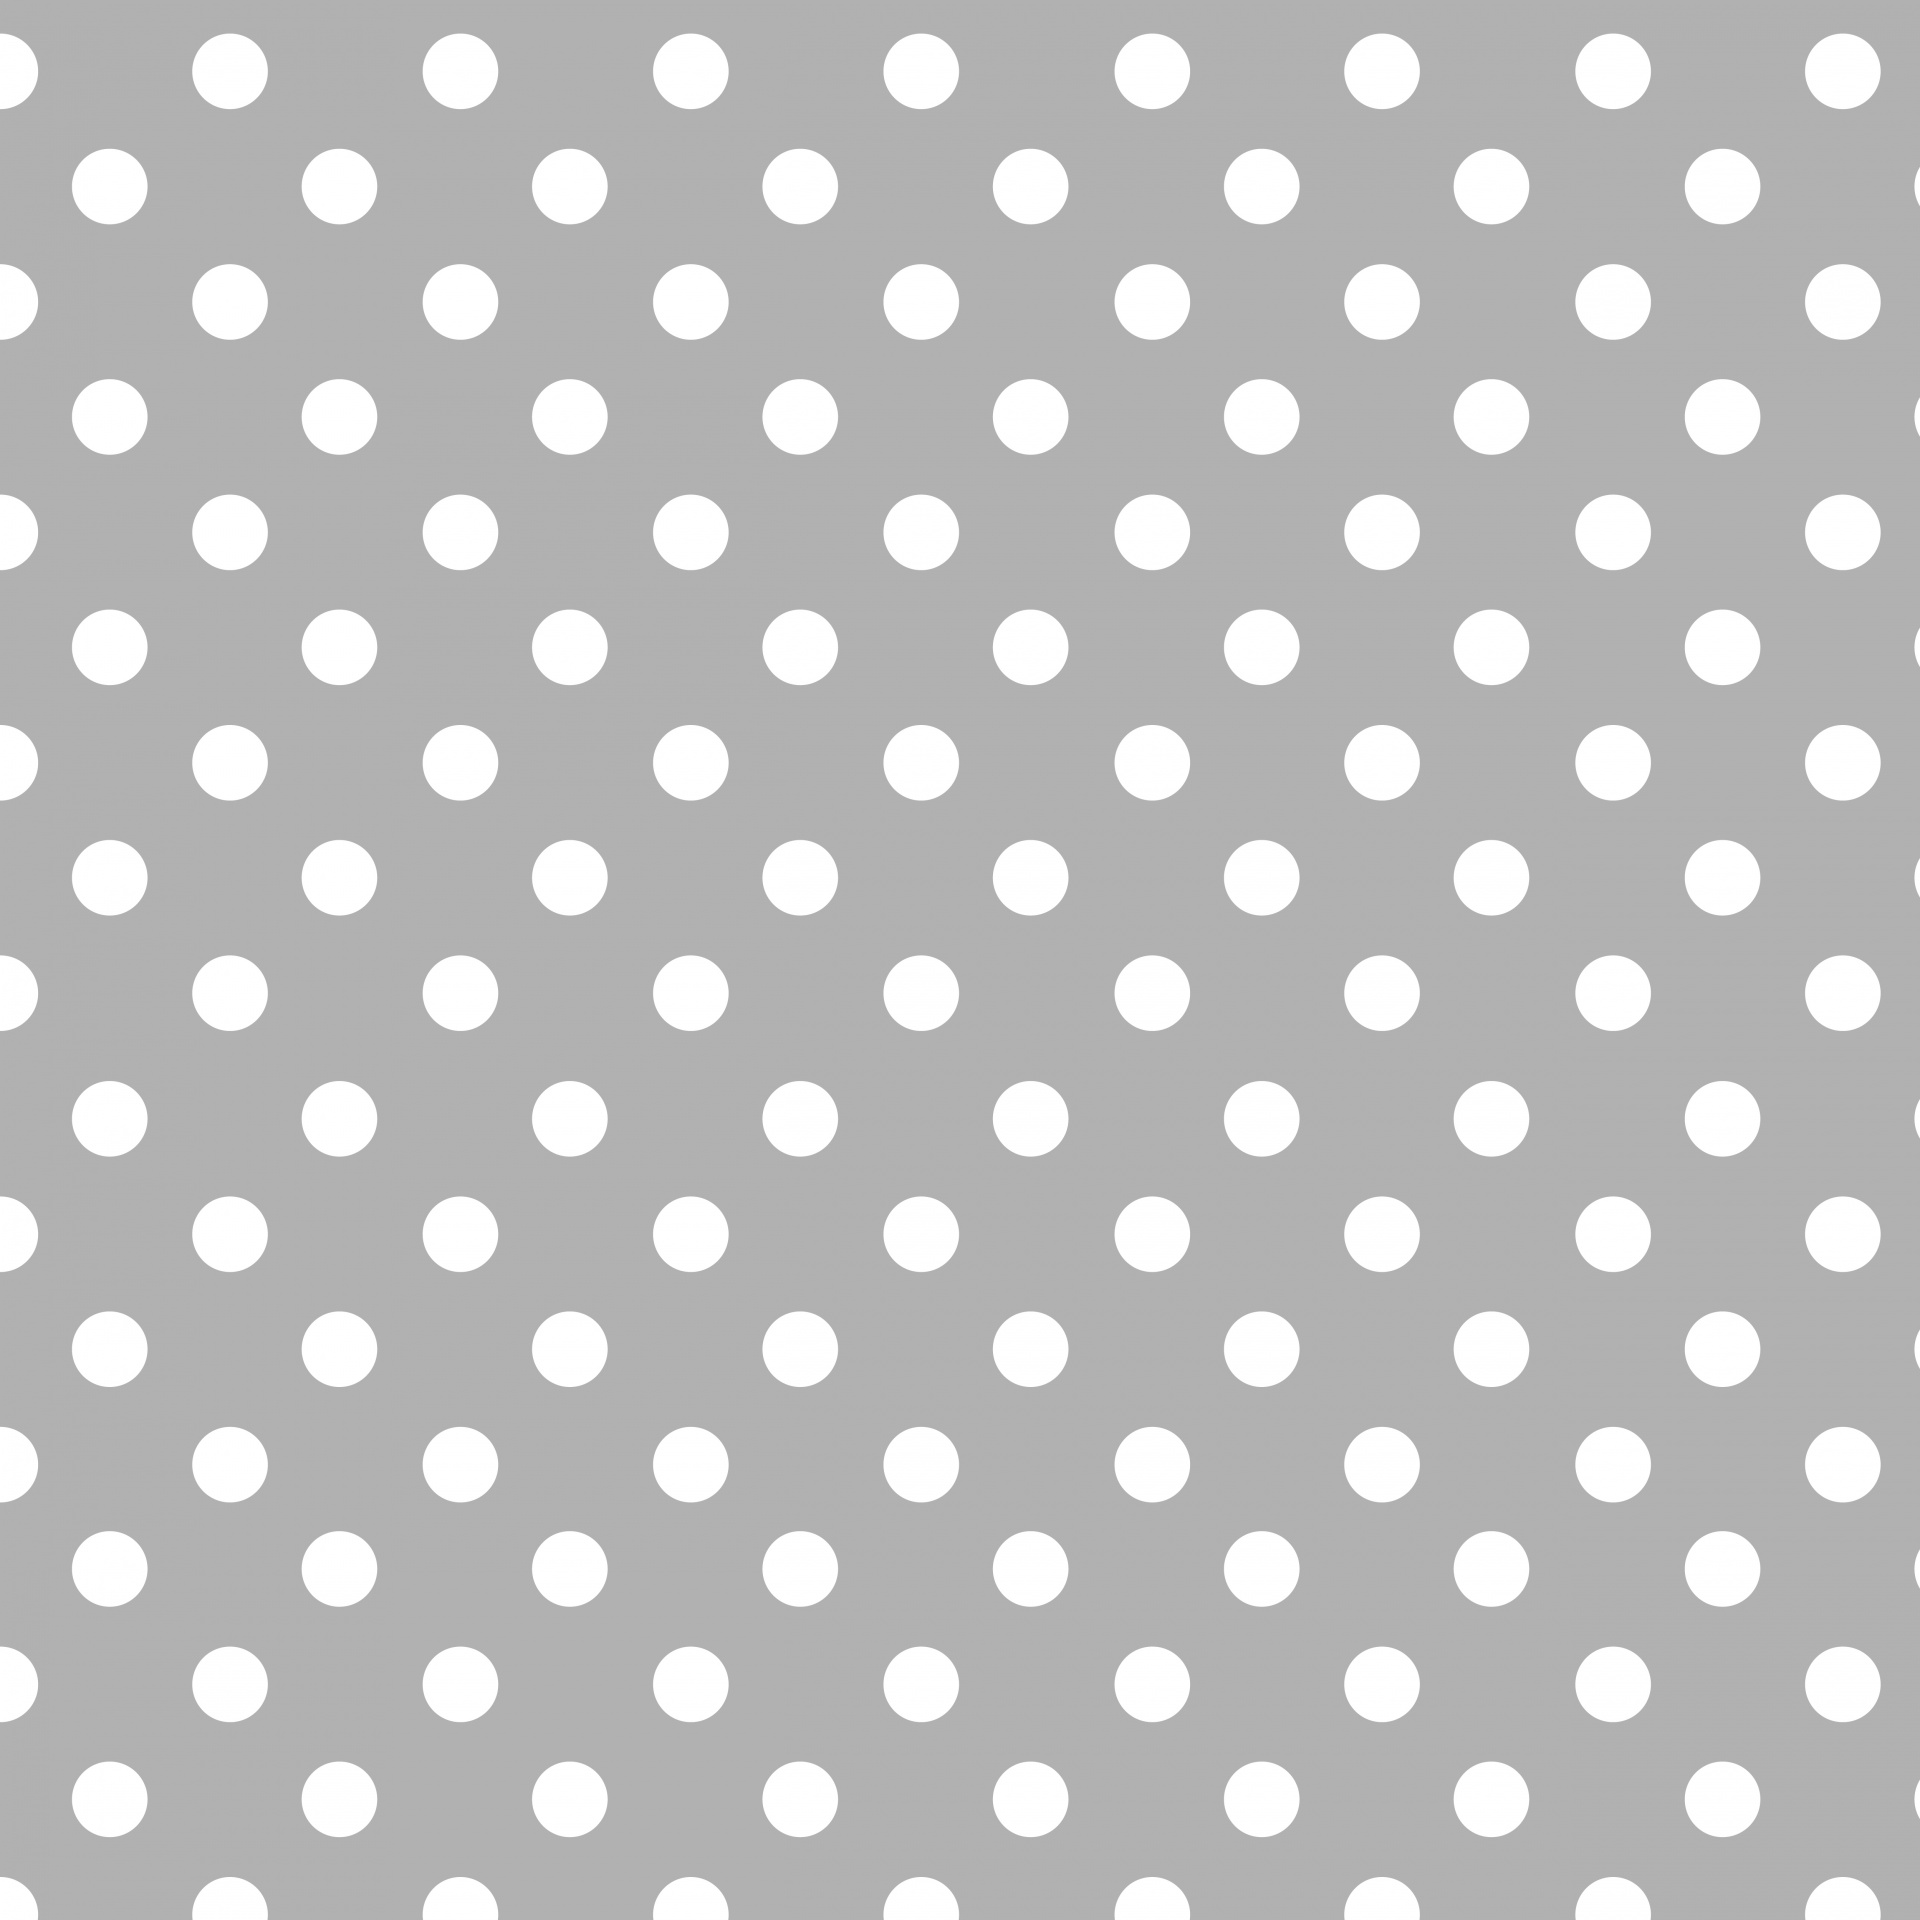 Polka Dots In Grey & White